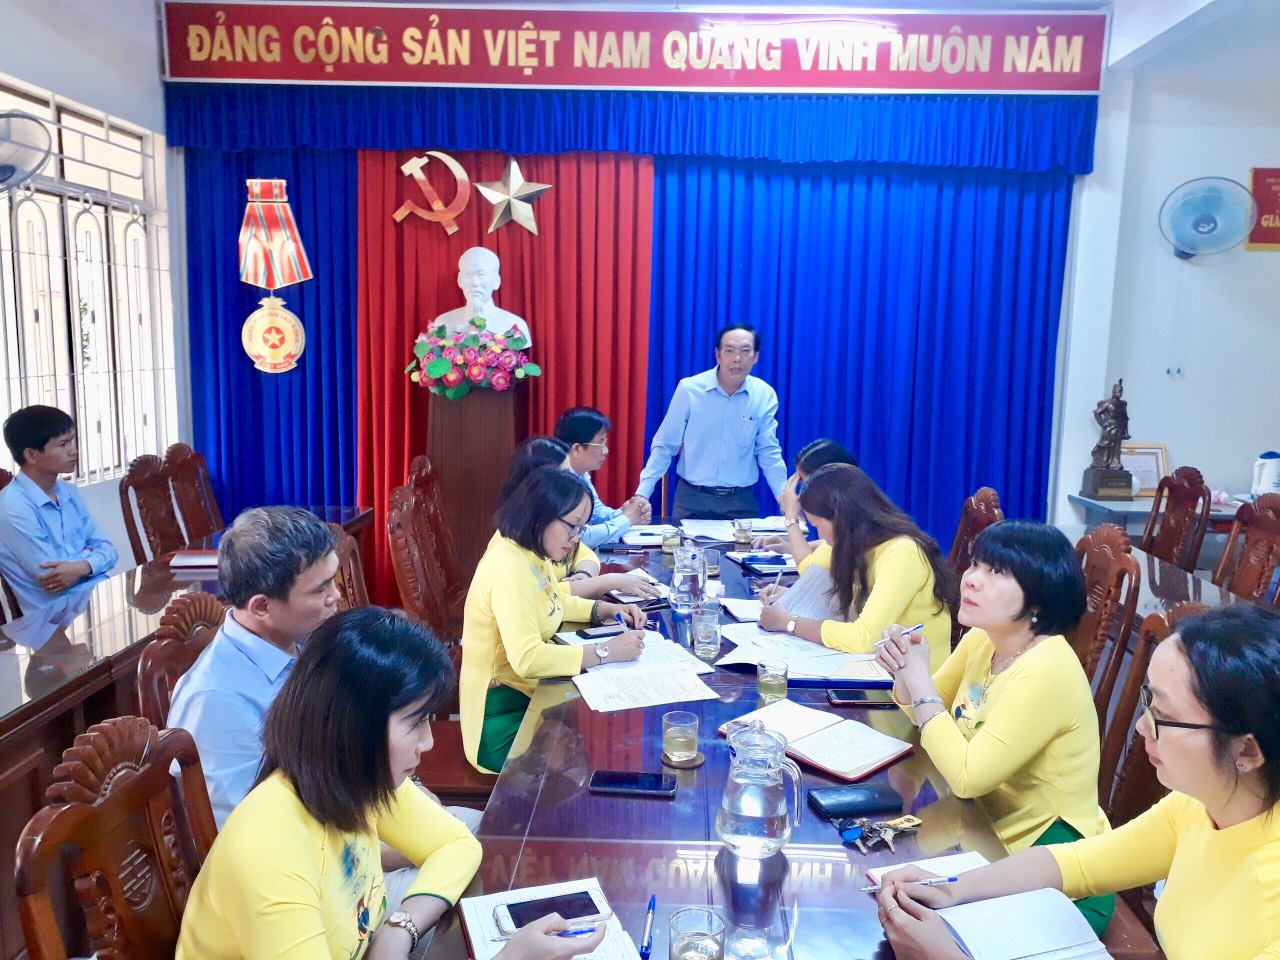 Ban Tuyên giáo Tỉnh ủy tổ chức các Hội nghị giới thiệu nhân sự ứng cử đại biểu HĐND tỉnh Khánh Hòa, nhiệm kỳ 2021-2026